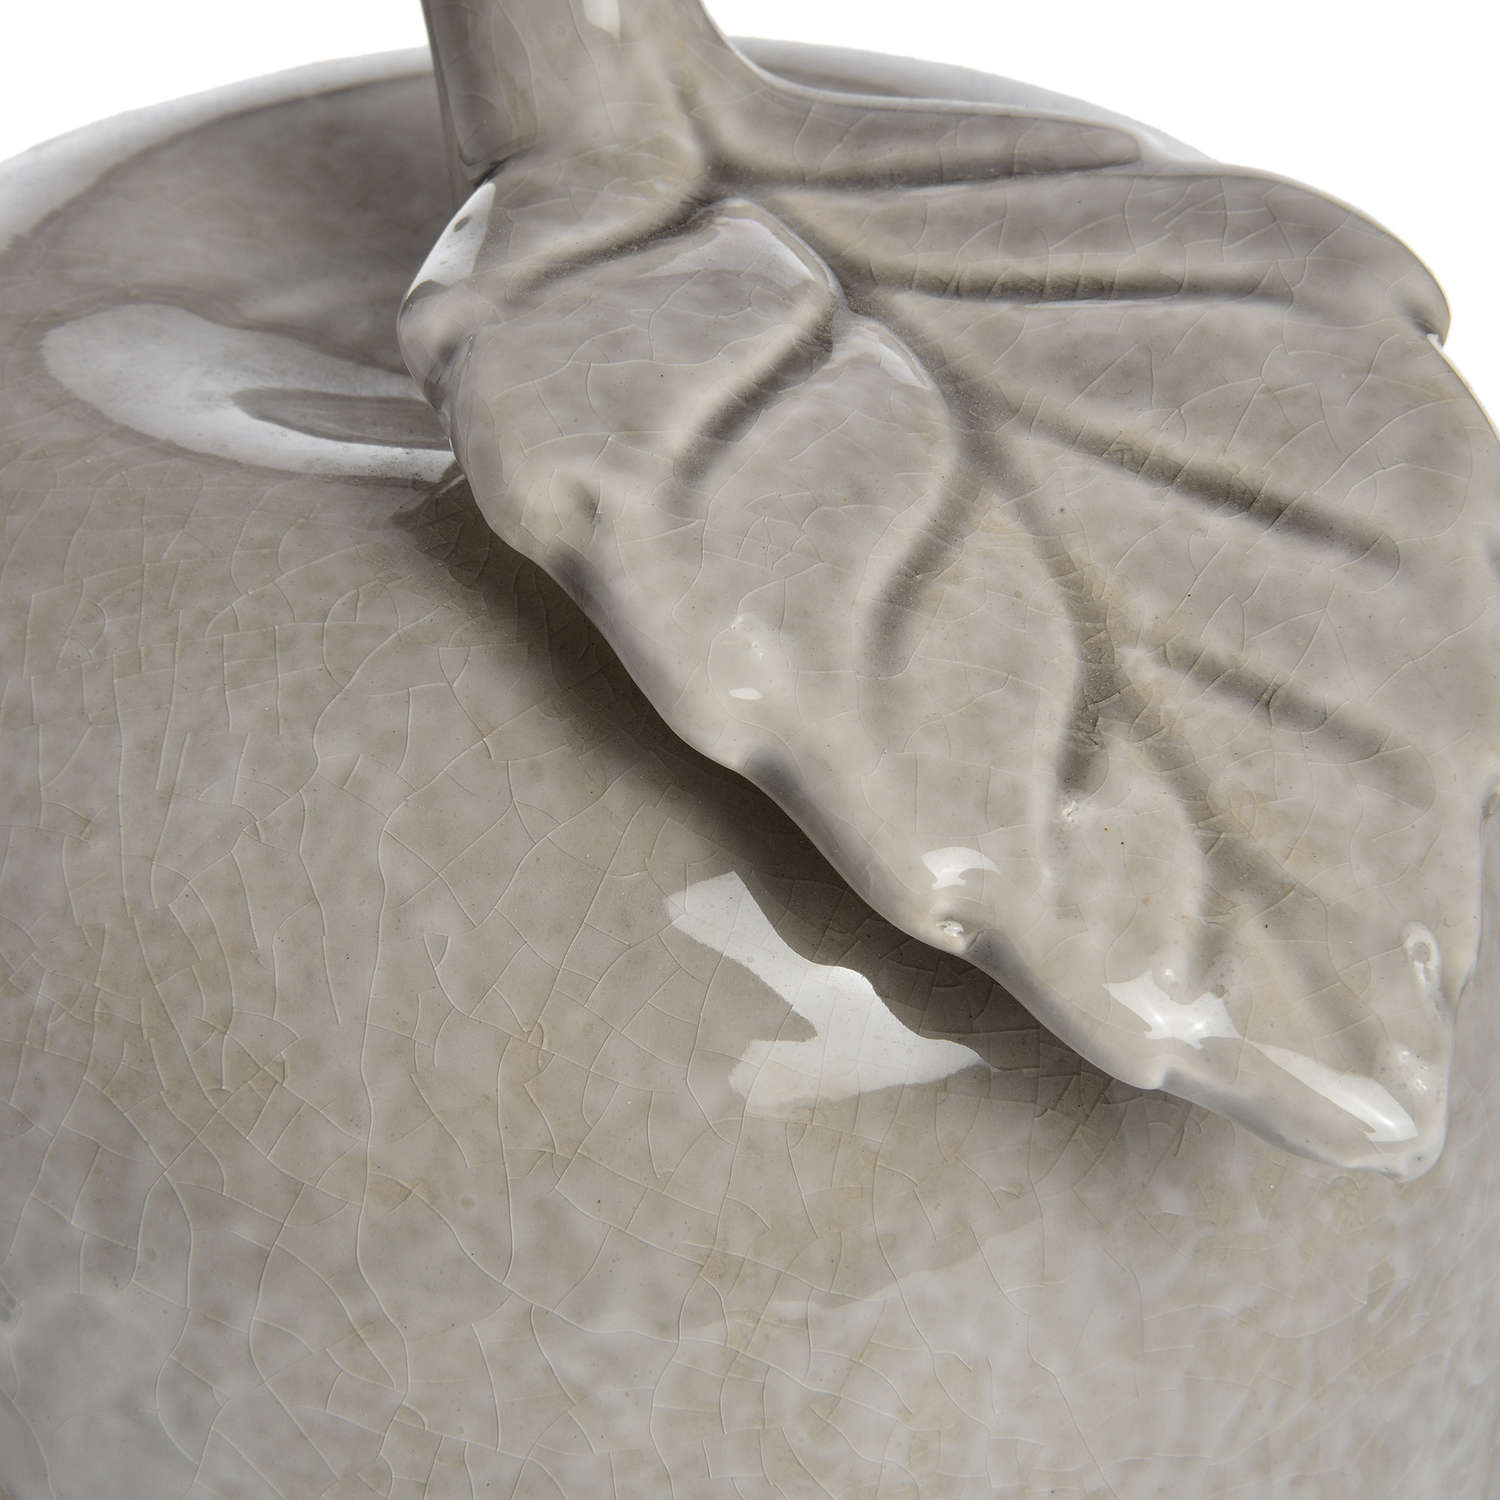 Antique Grey Large Ceramic Apple - Image 3